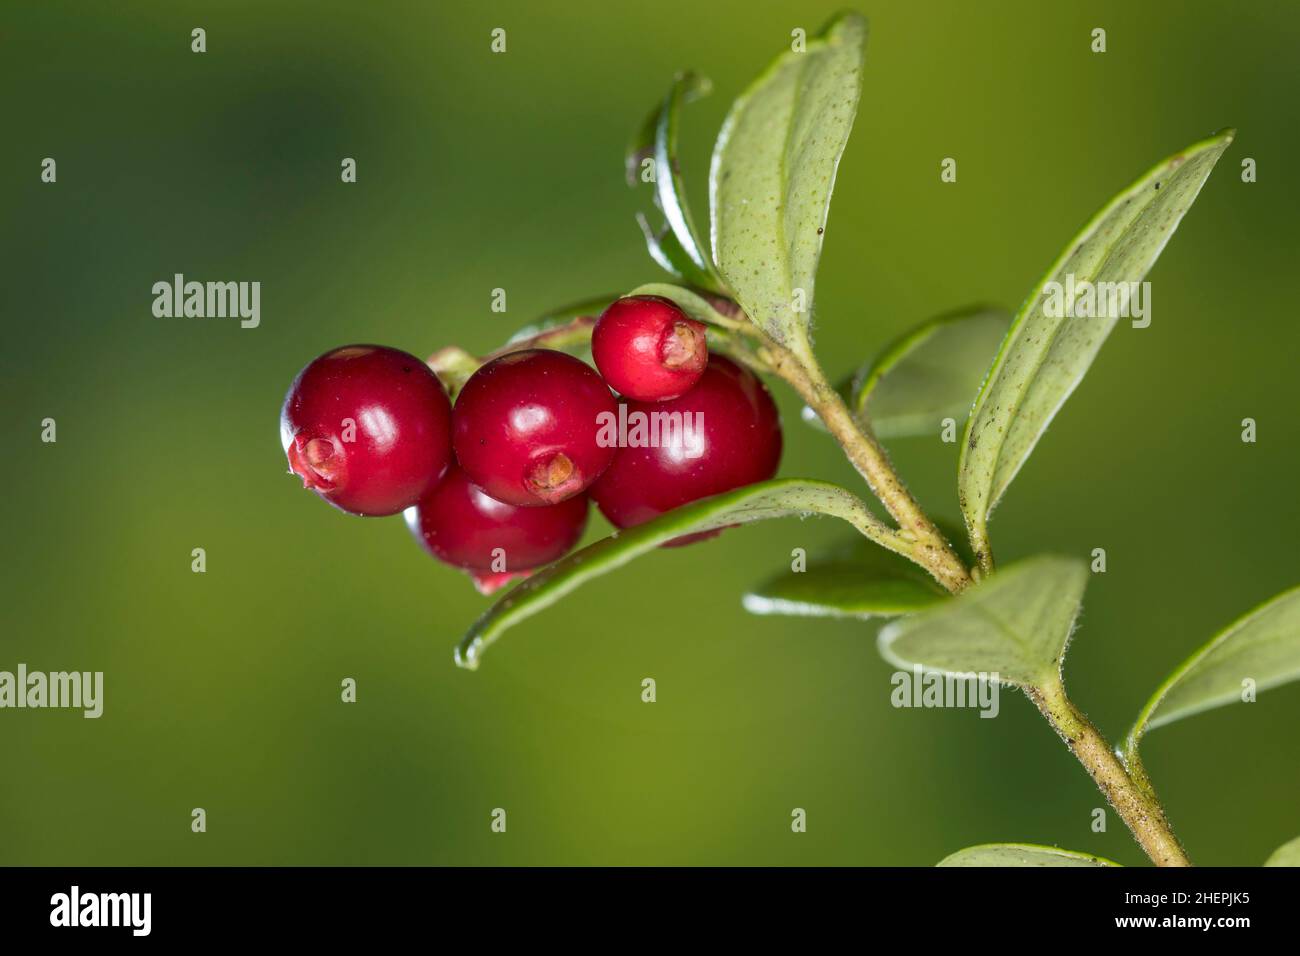 Baie de cowberry, framboise, airelle, canneberge de montagne (Vaccinium vitis-idaea), fruit sur une branche, Allemagne Banque D'Images